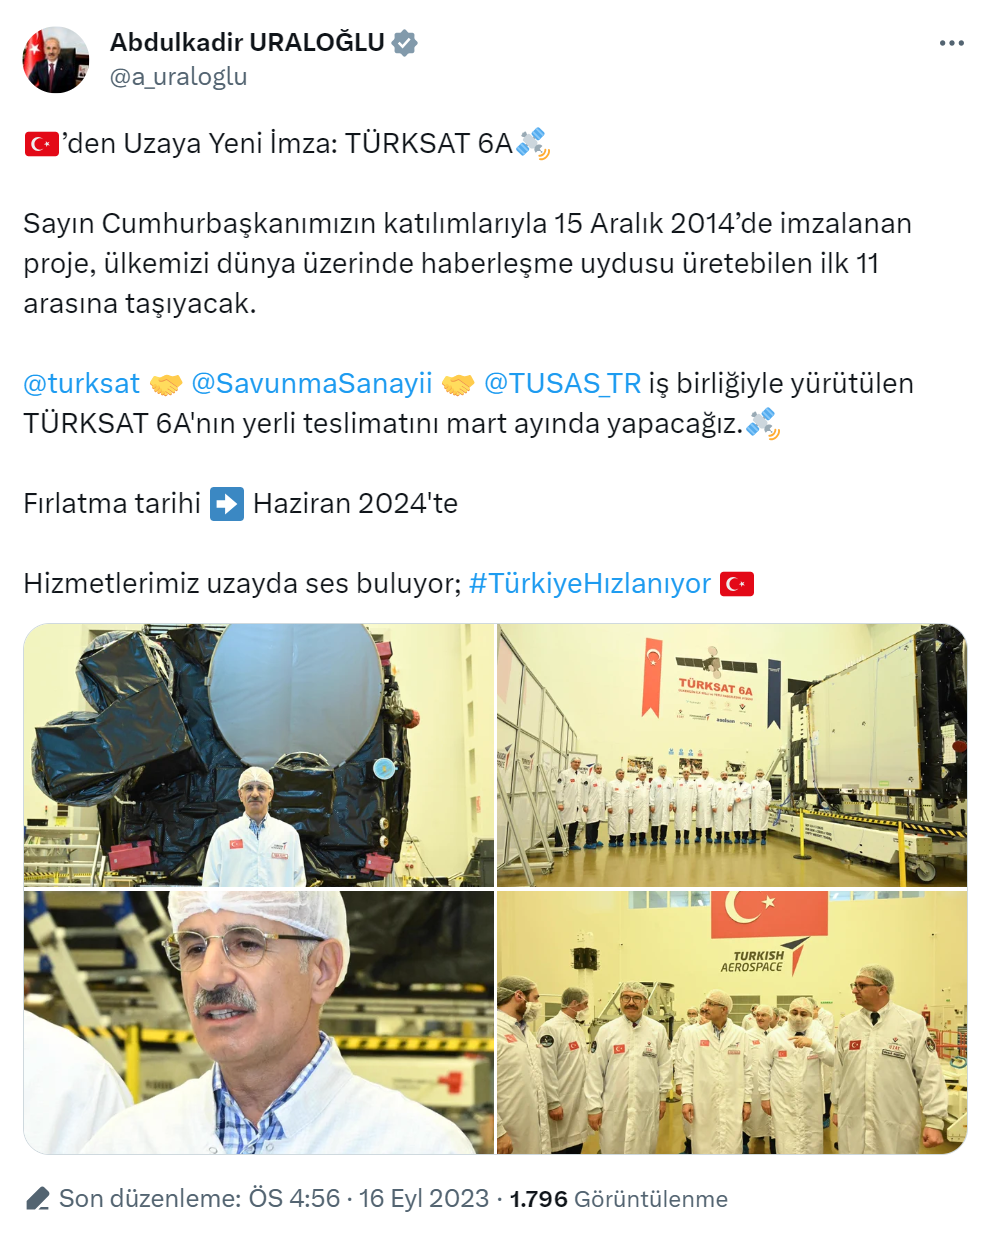 Bakan Uraloğlu: “Türksat 6A’nın yerli teslimatını mart ayında yapacağız”